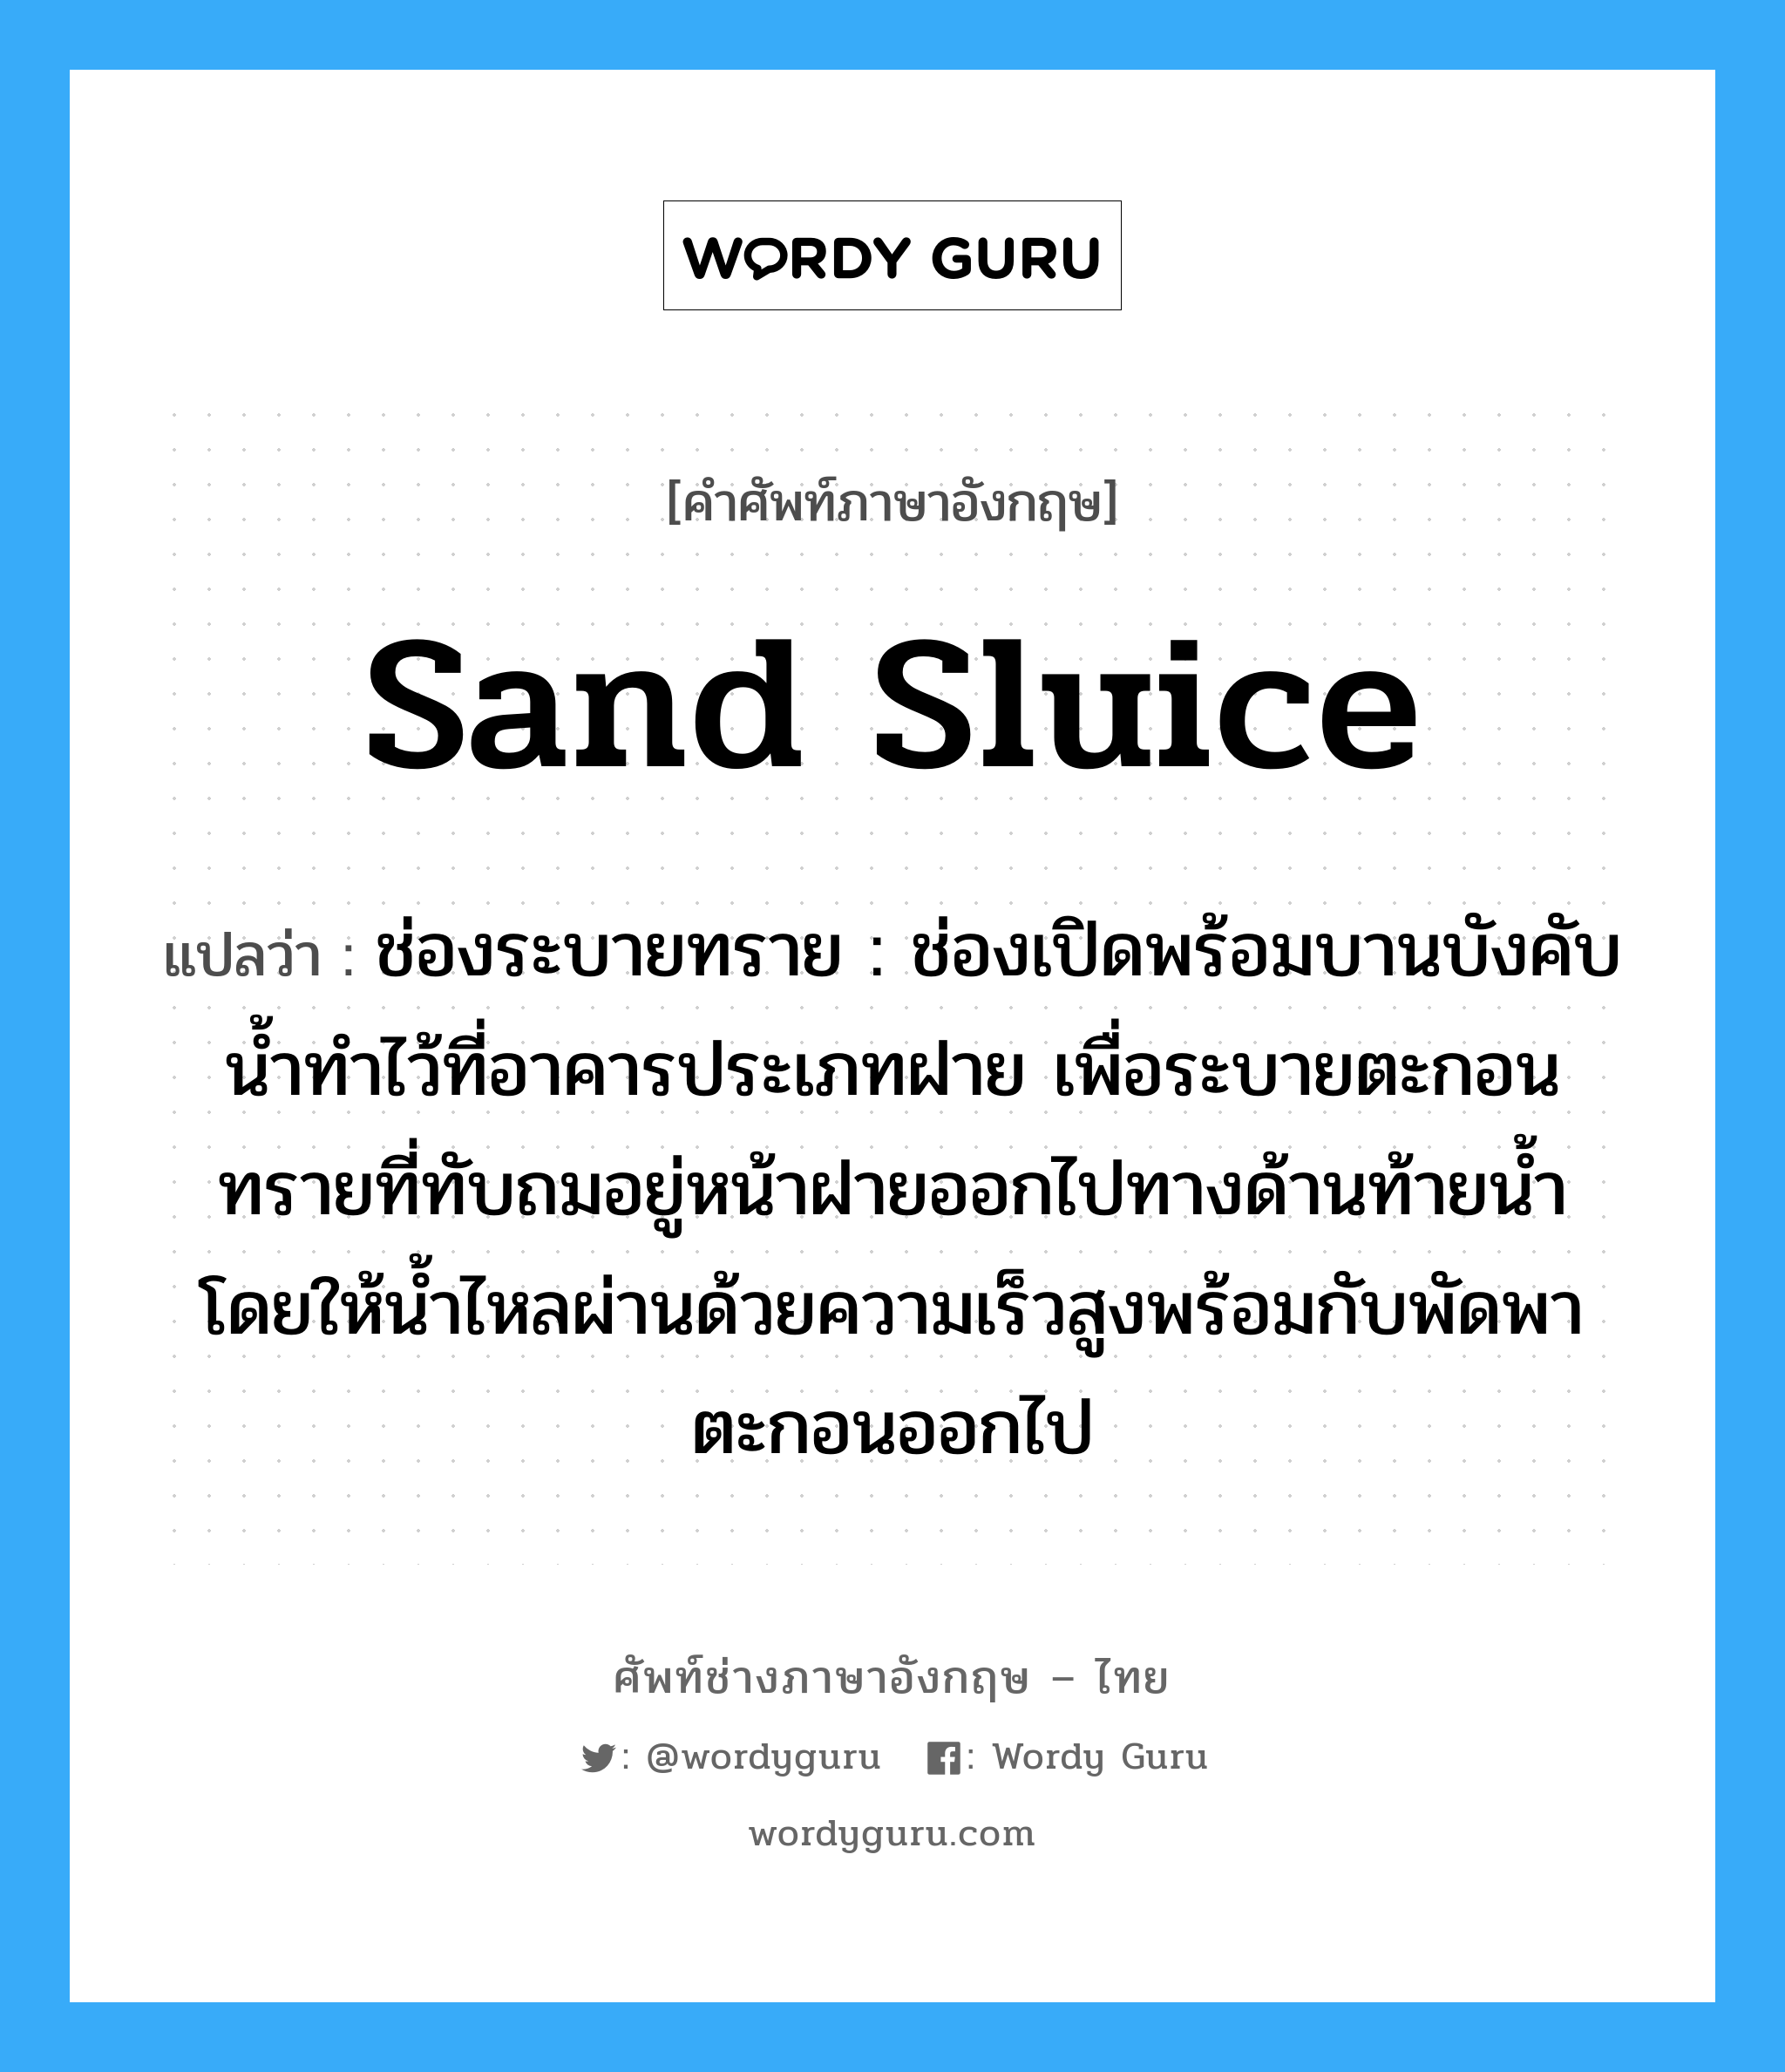 sand sluice แปลว่า?, คำศัพท์ช่างภาษาอังกฤษ - ไทย sand sluice คำศัพท์ภาษาอังกฤษ sand sluice แปลว่า ช่องระบายทราย : ช่องเปิดพร้อมบานบังคับน้ำทำไว้ที่อาคารประเภทฝาย เพื่อระบายตะกอนทรายที่ทับถมอยู่หน้าฝายออกไปทางด้านท้ายน้ำ โดยให้น้ำไหลผ่านด้วยความเร็วสูงพร้อมกับพัดพาตะกอนออกไป